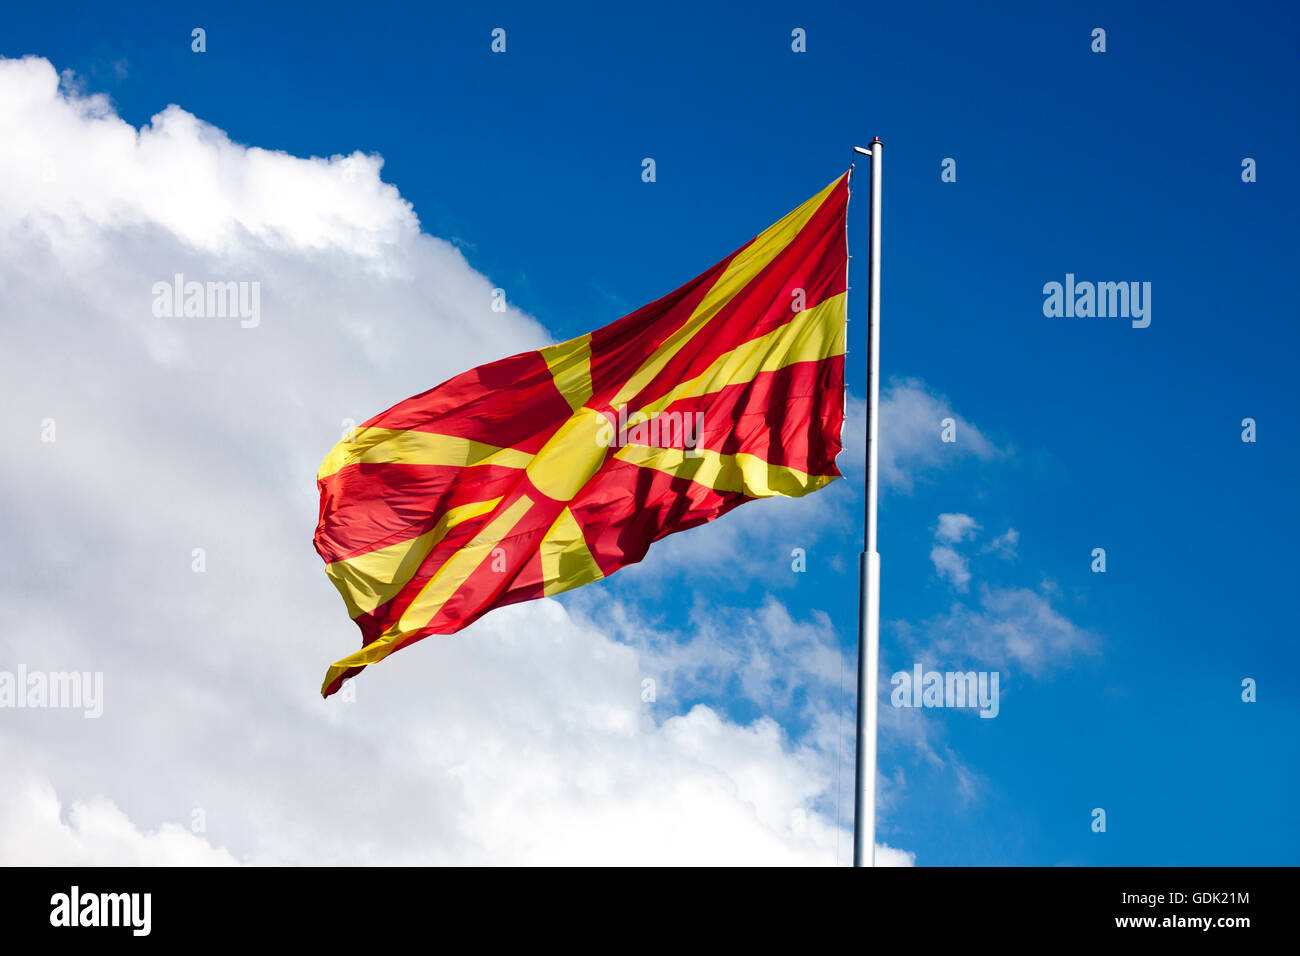 Bandiera macedone sventolare sul bianco e blu cielo, sul montante. Giornata di sole. Foto Stock